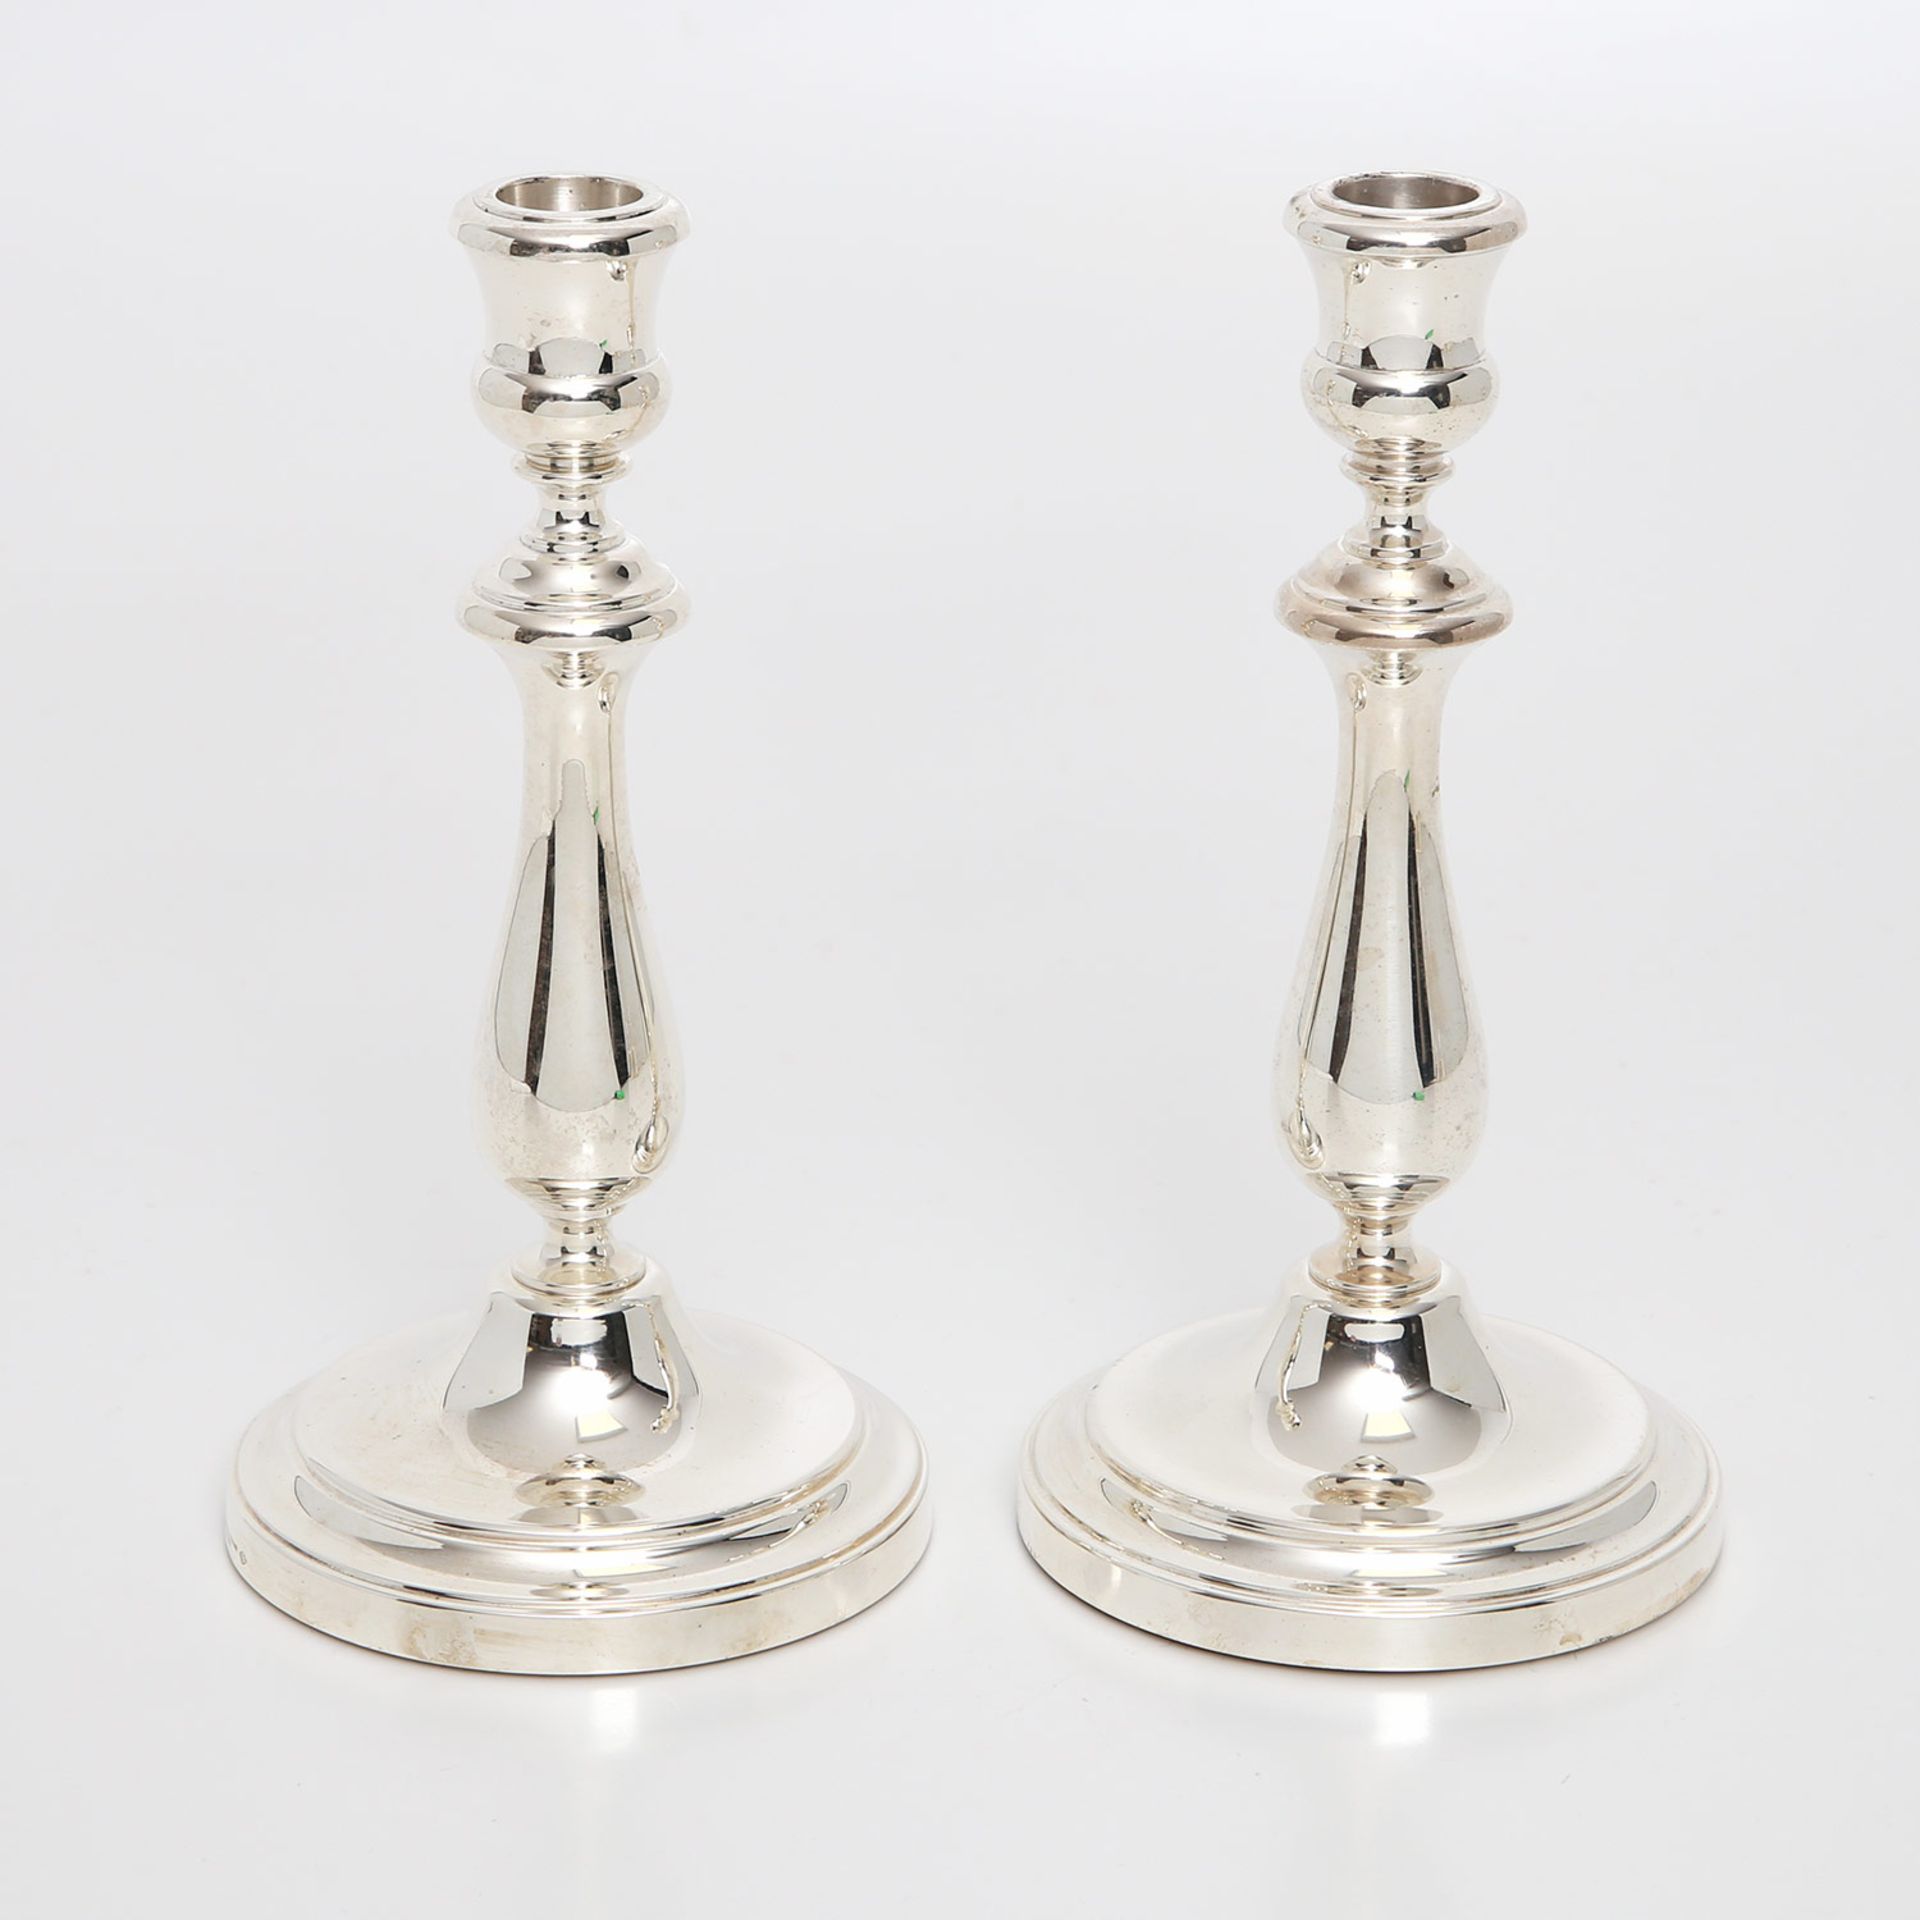 CHRISTOFLE Paar Kerzenleuchter 'Albi', Sterling-Silber, 20. Jhd. Einflammig, auf rundem profiliertem